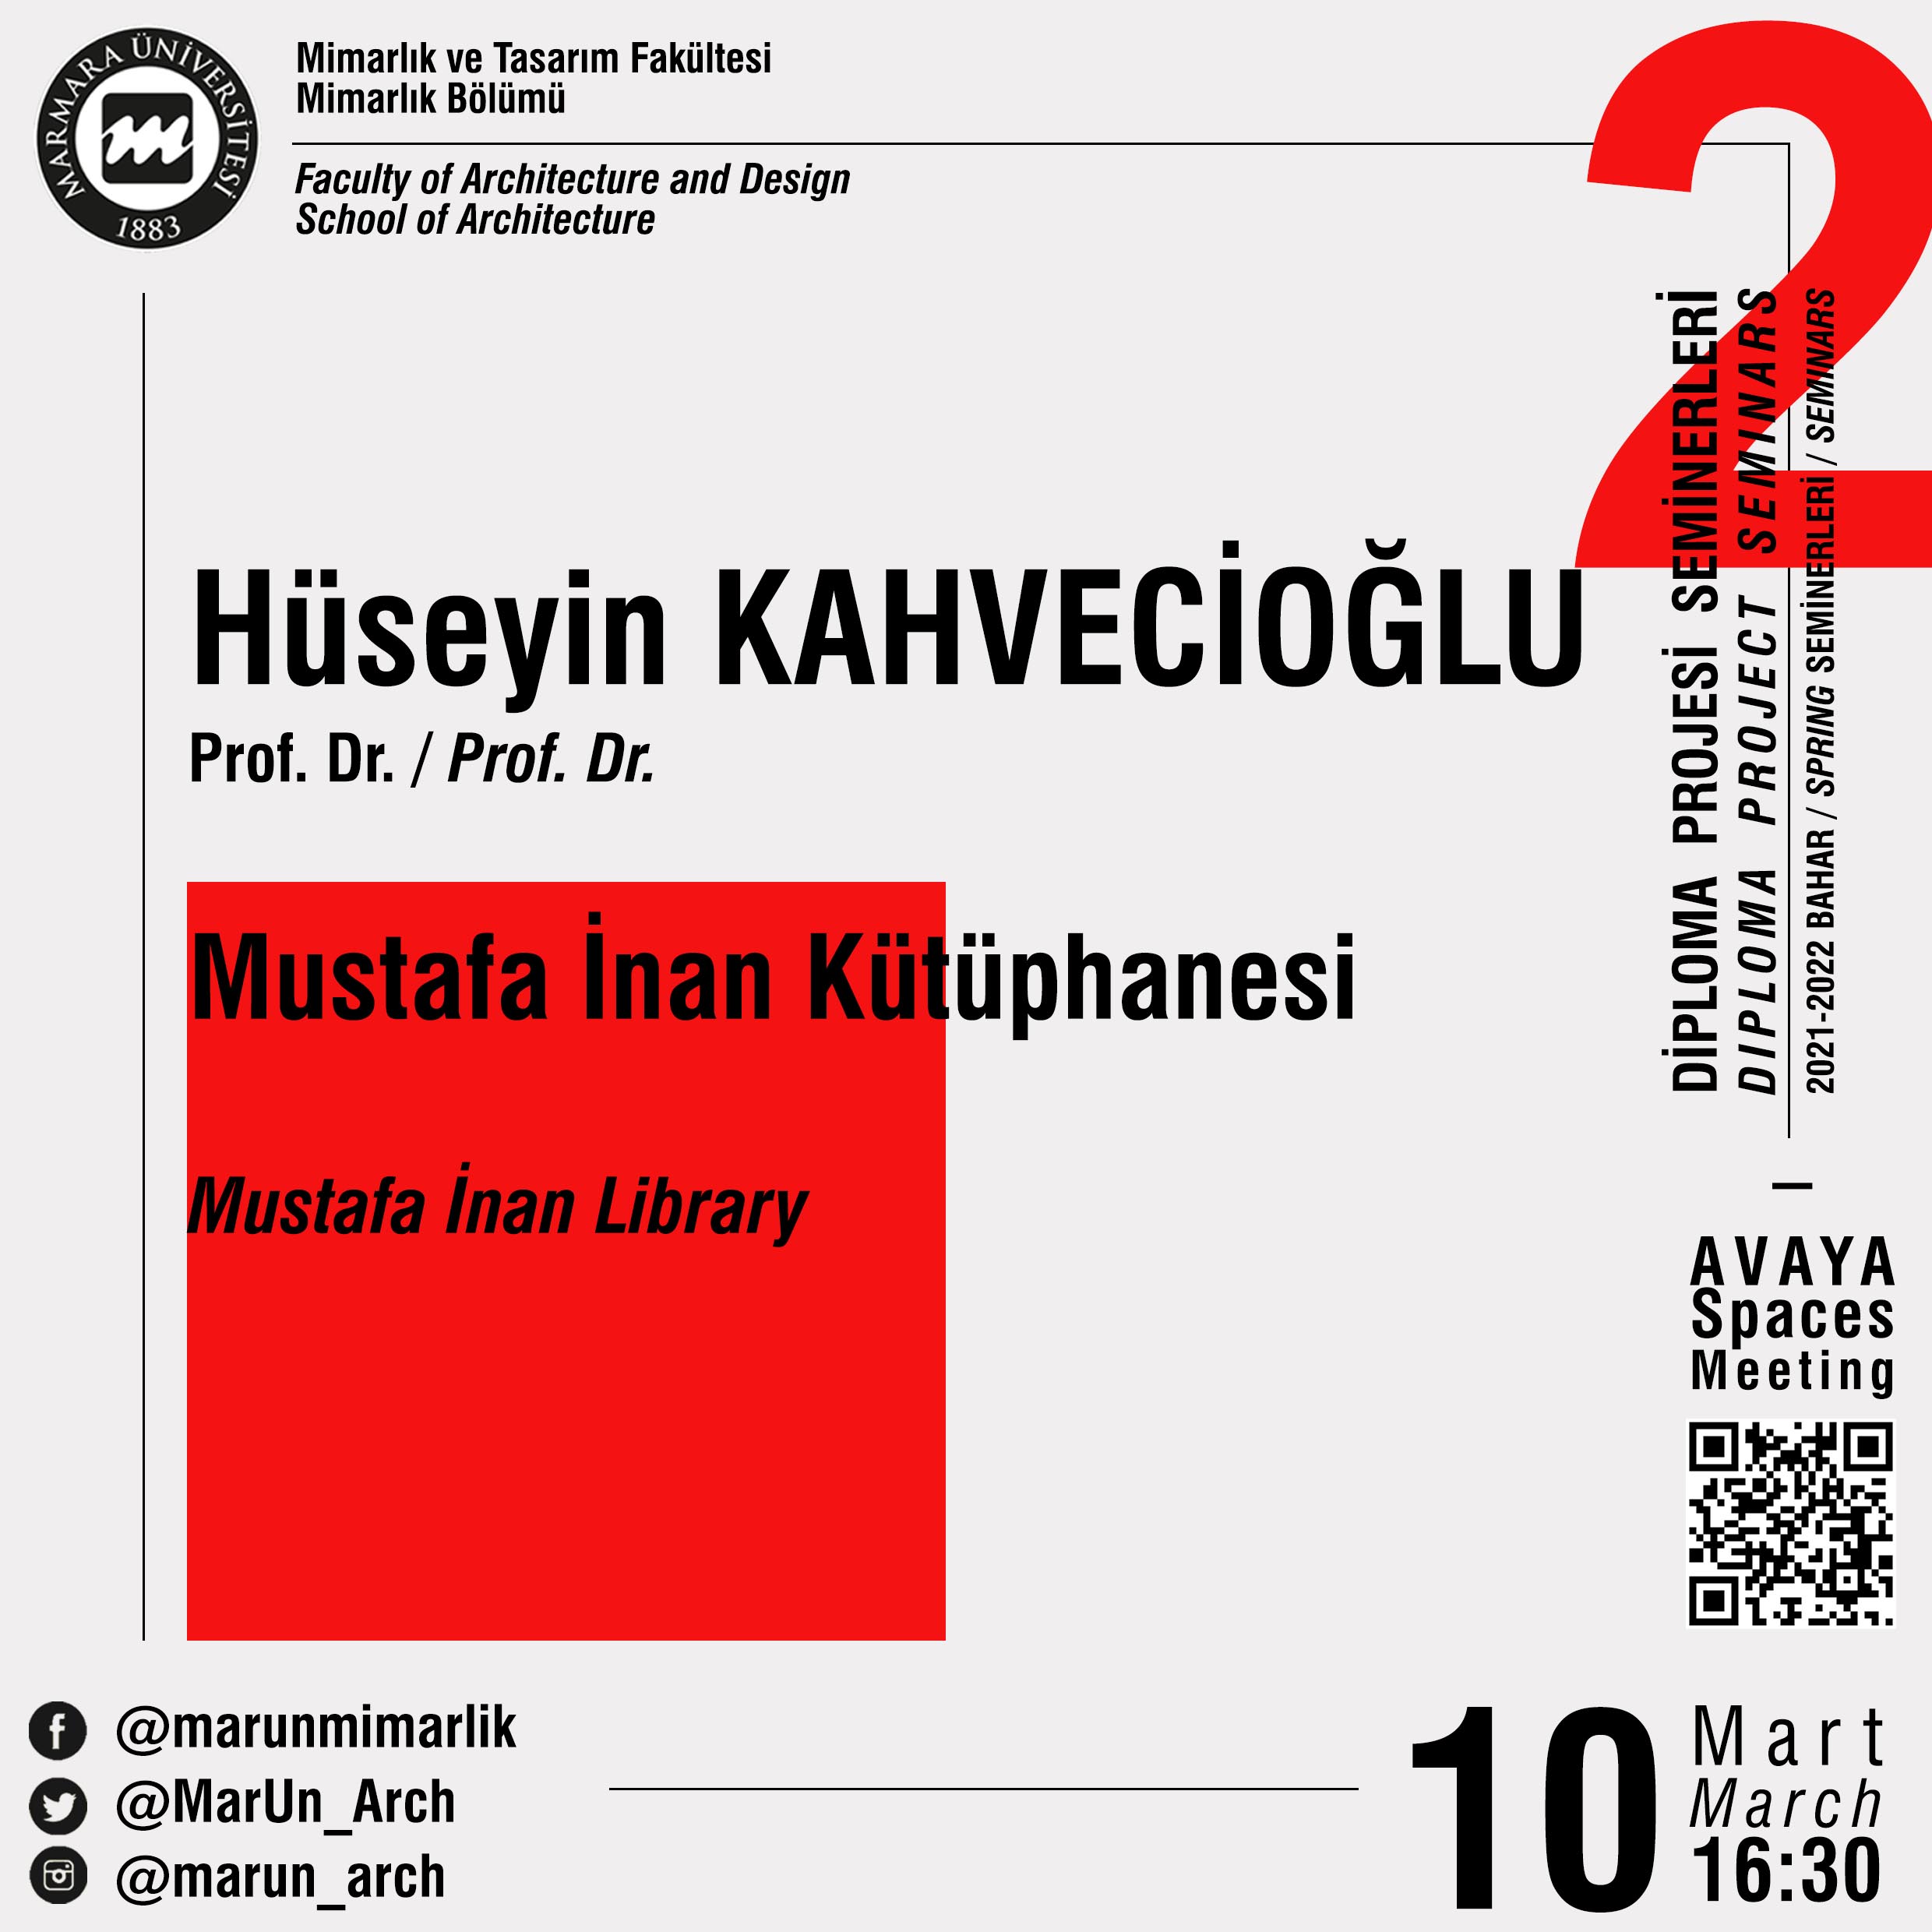 02_Hüseyin Kahvecioğlu.jpg (401 KB)